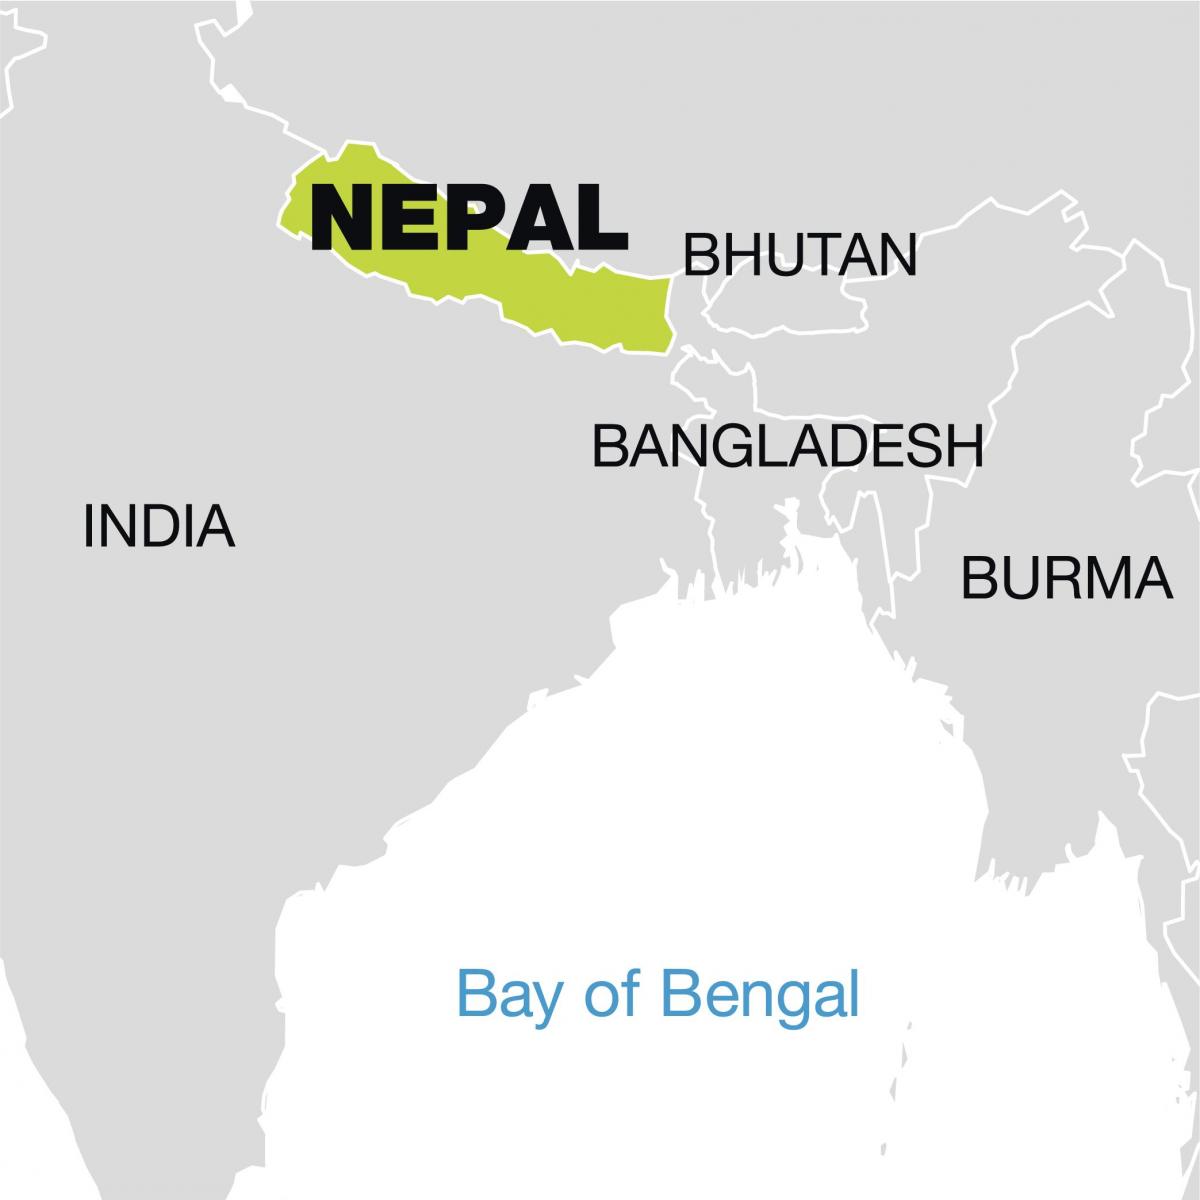 svet mapy zobrazujúci nepál